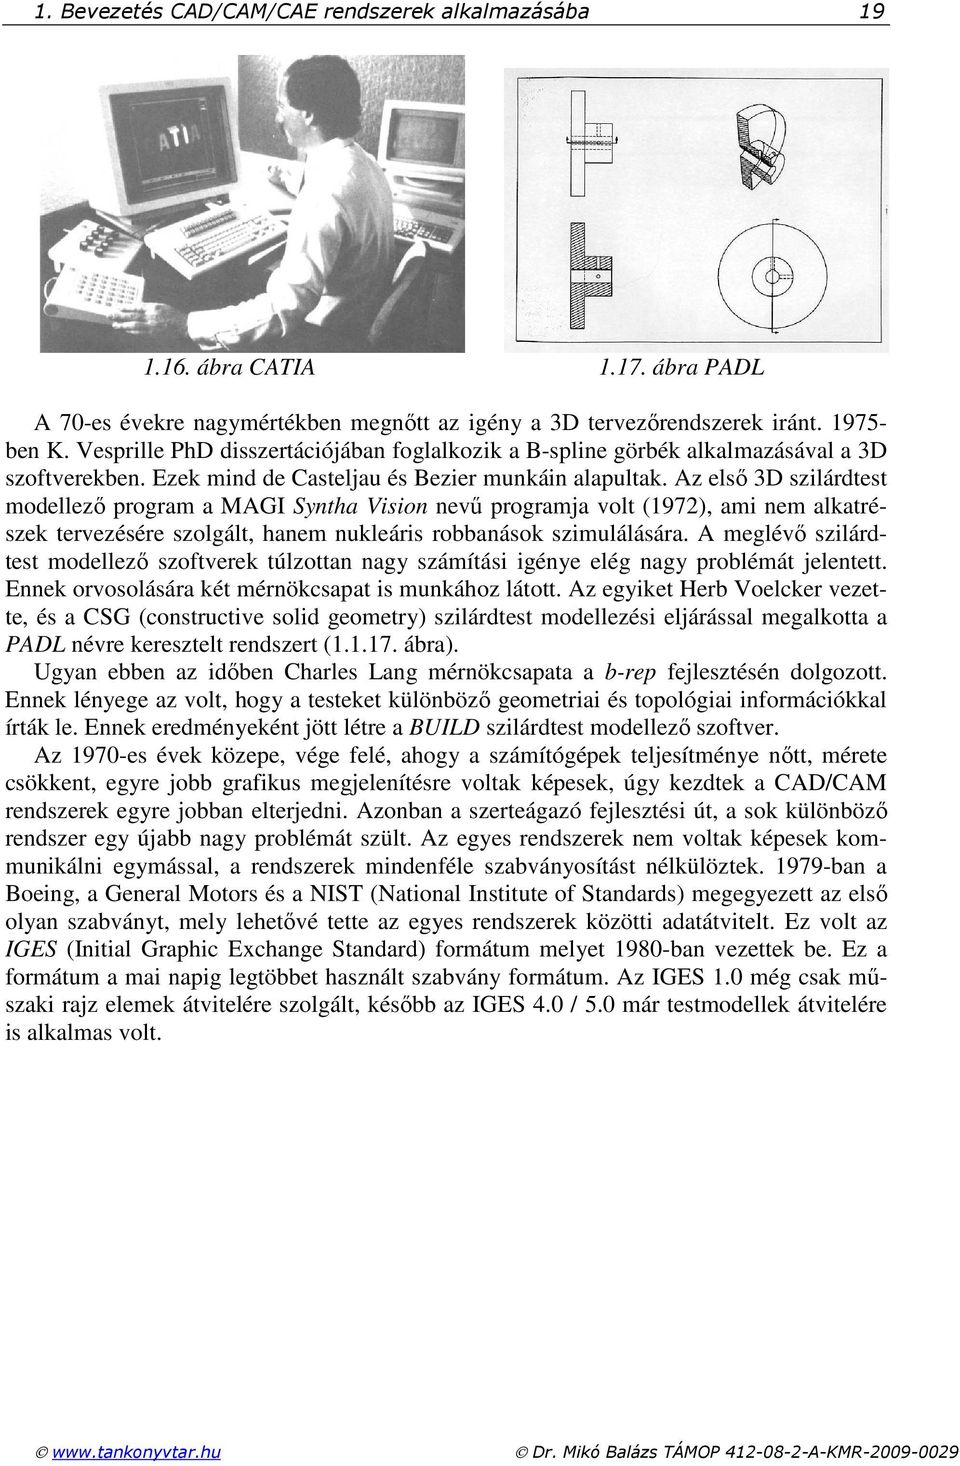 Az elsı 3D szilárdtest modellezı program a MAGI Syntha Vision nevő programja volt (1972), ami nem alkatrészek tervezésére szolgált, hanem nukleáris robbanások szimulálására.